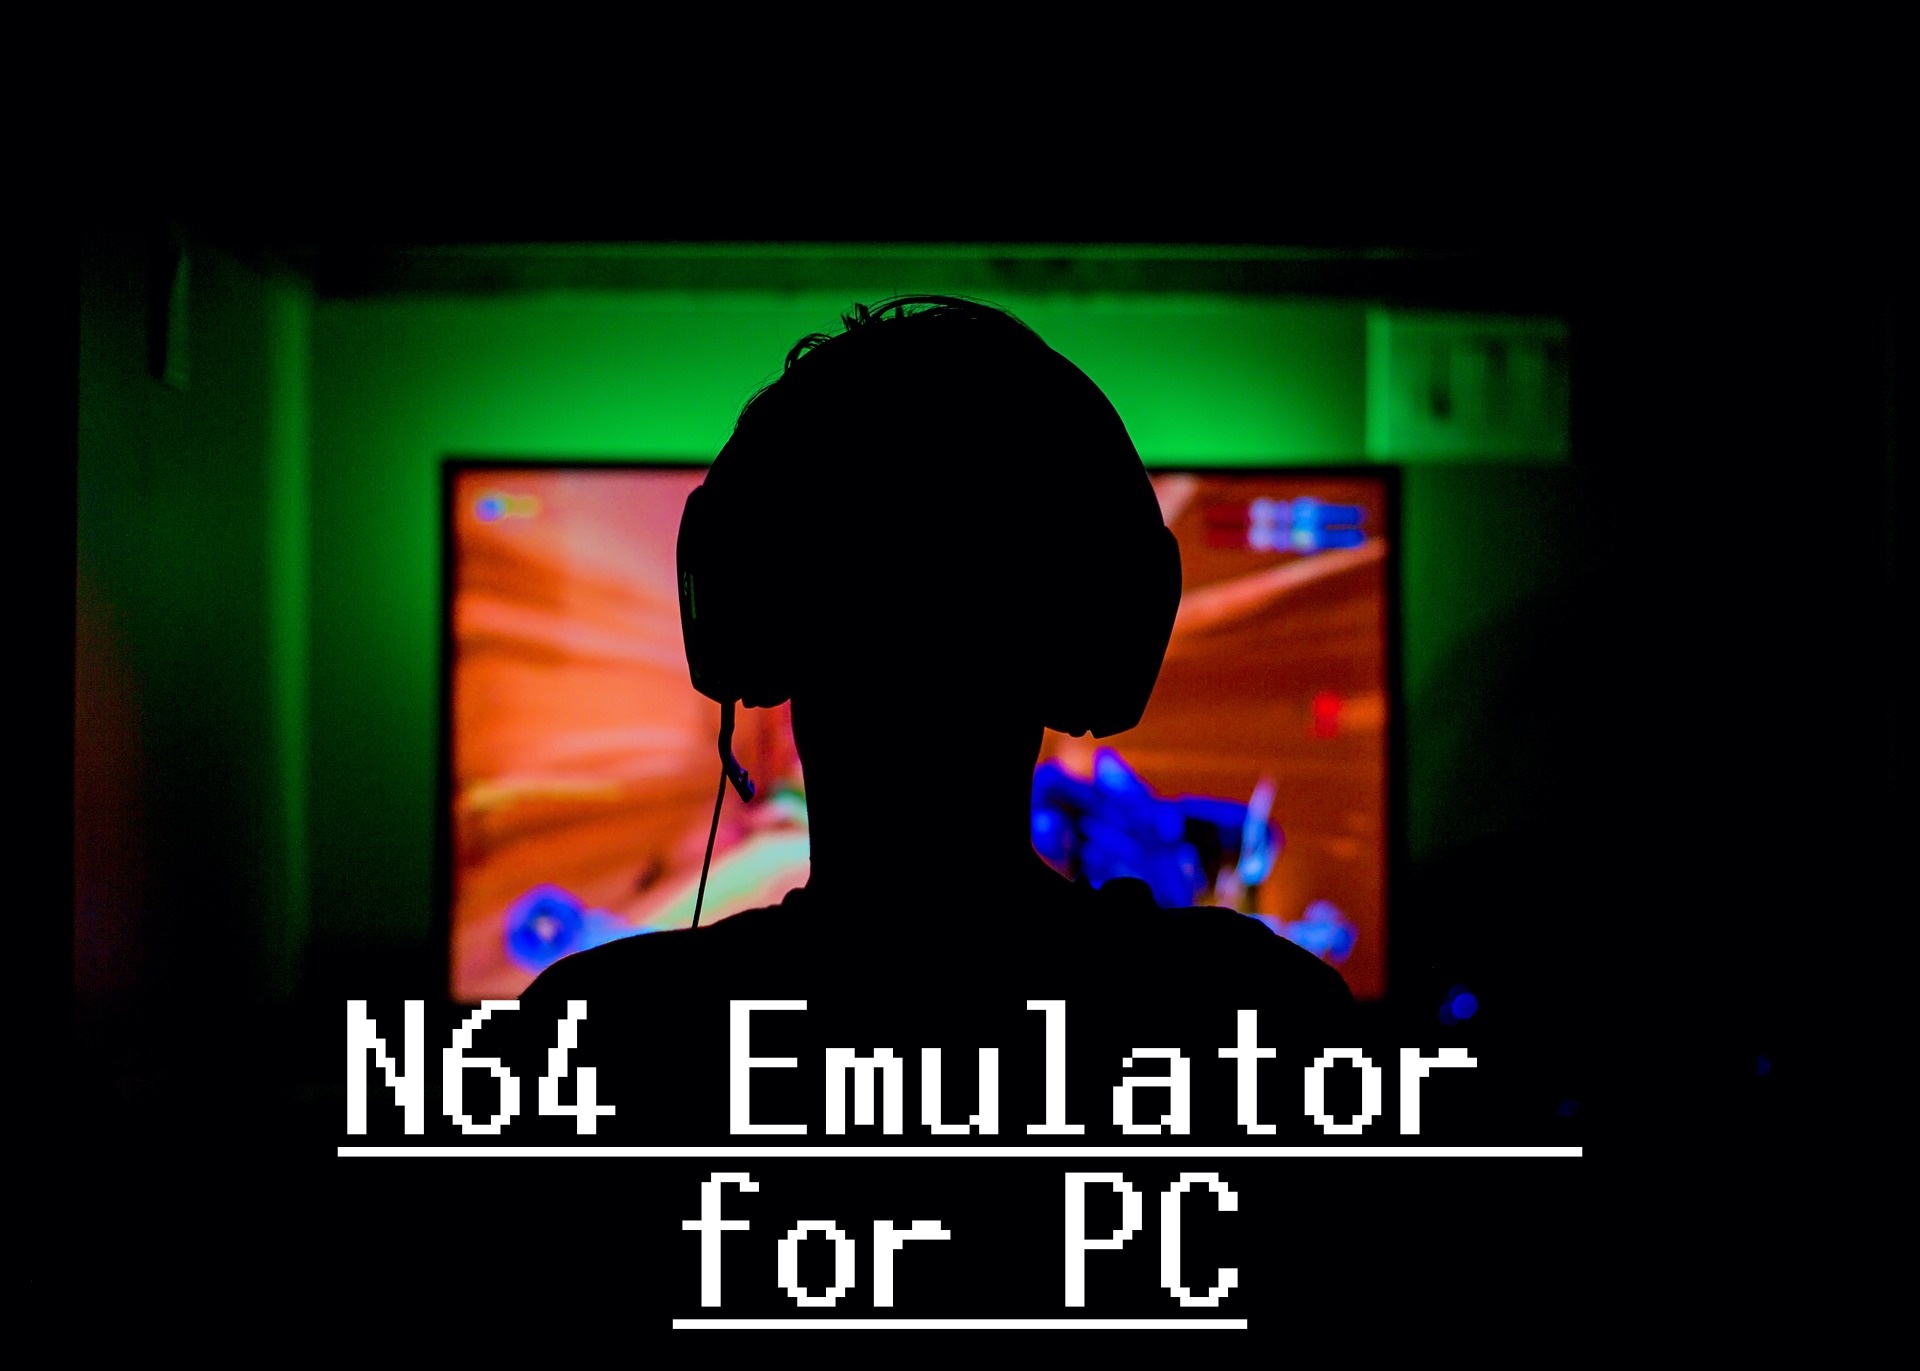 N64 Emulator for PC